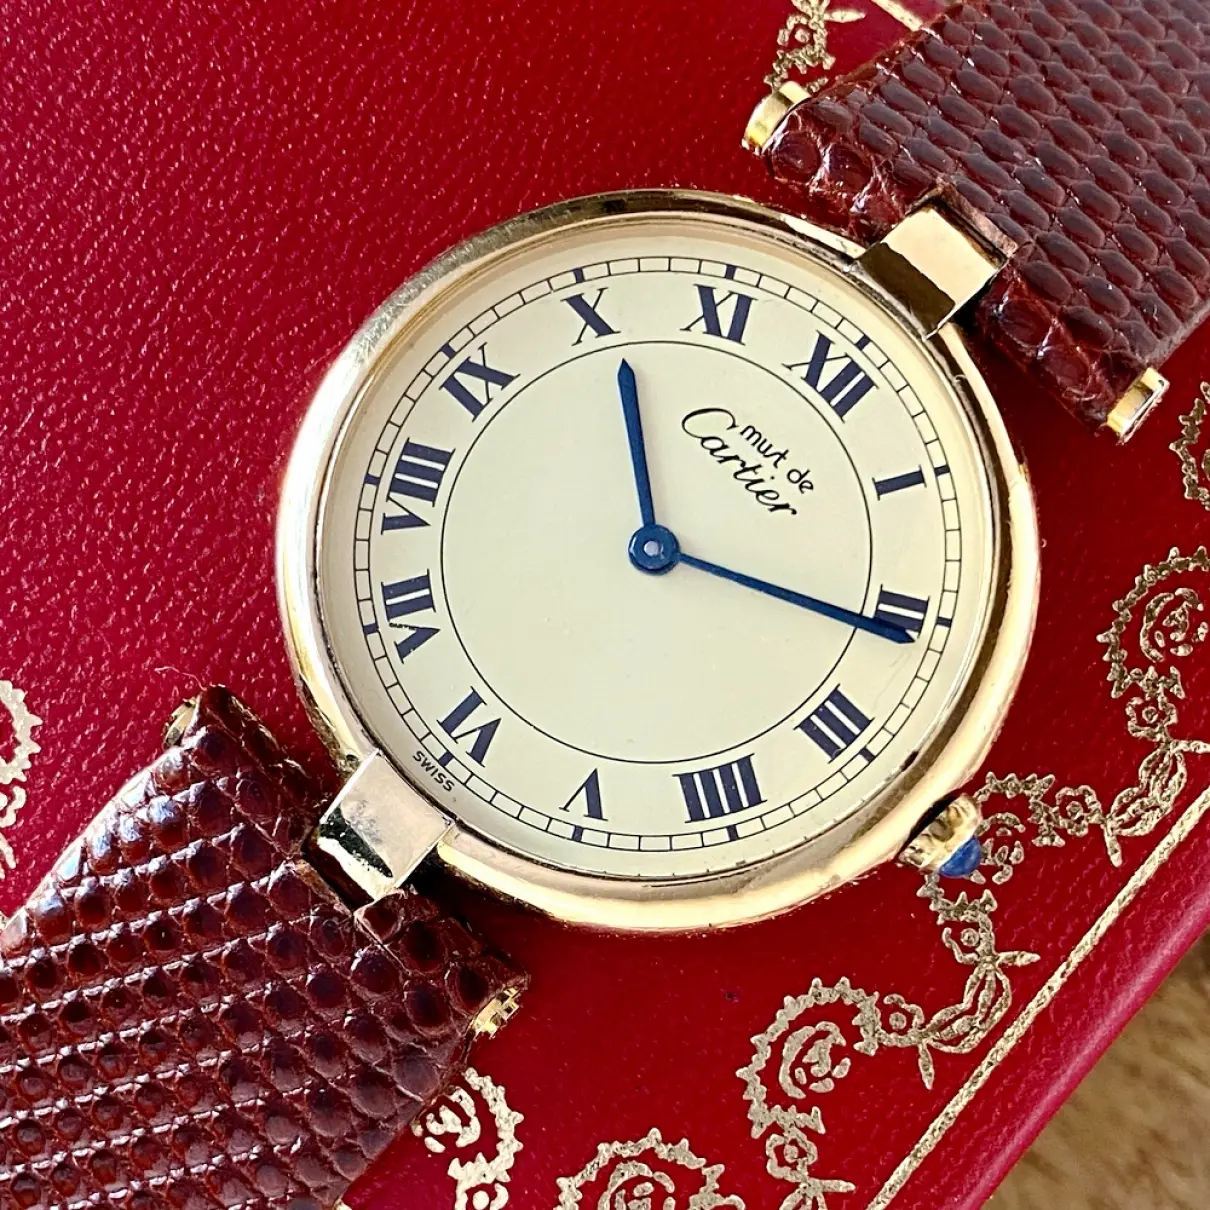 Must Vendôme silver gilt watch Cartier